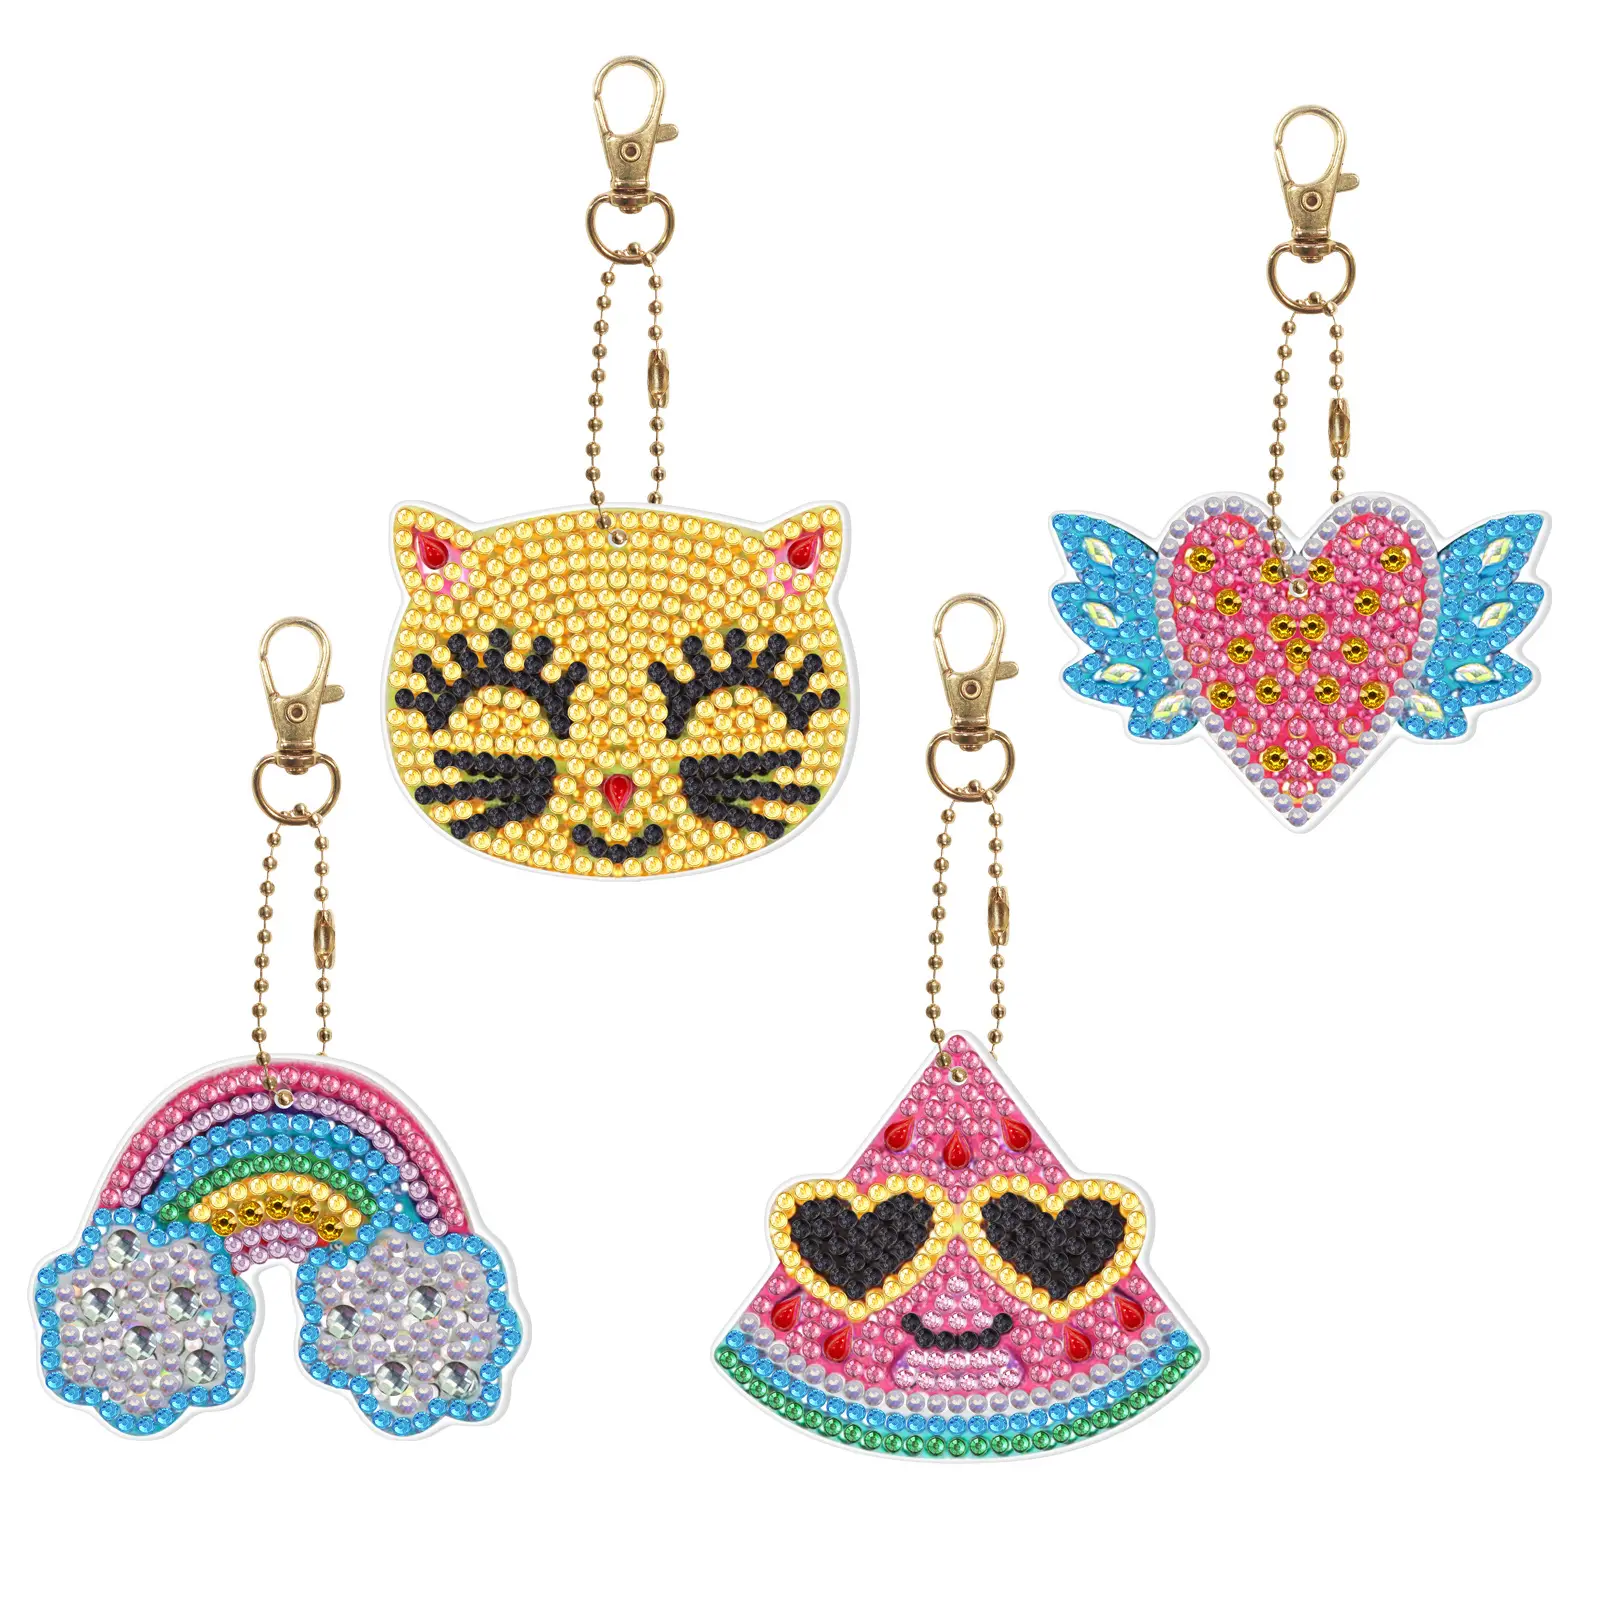 Porte-clés peinture diamant arc-en-ciel pendentif ange porte-clés peinture diamant cristal chat porte-clés sac décoration cadeau fait à la main